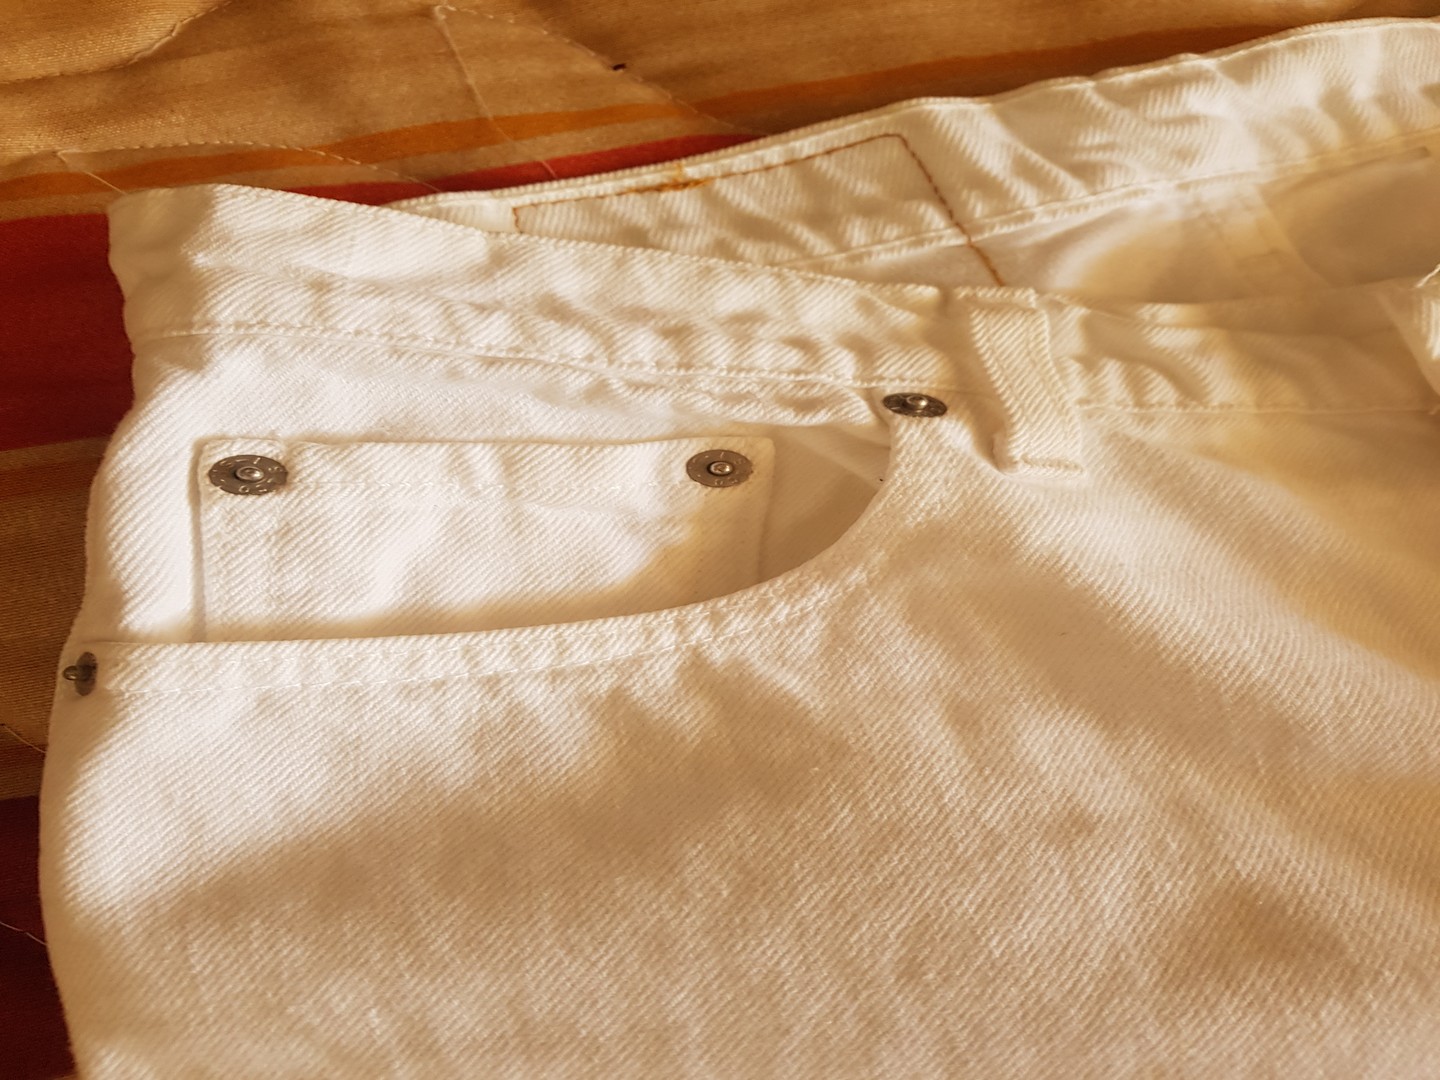 ropa para mujer - Pantalón blanco tela de jeans de algodón, marca Levi's. 2